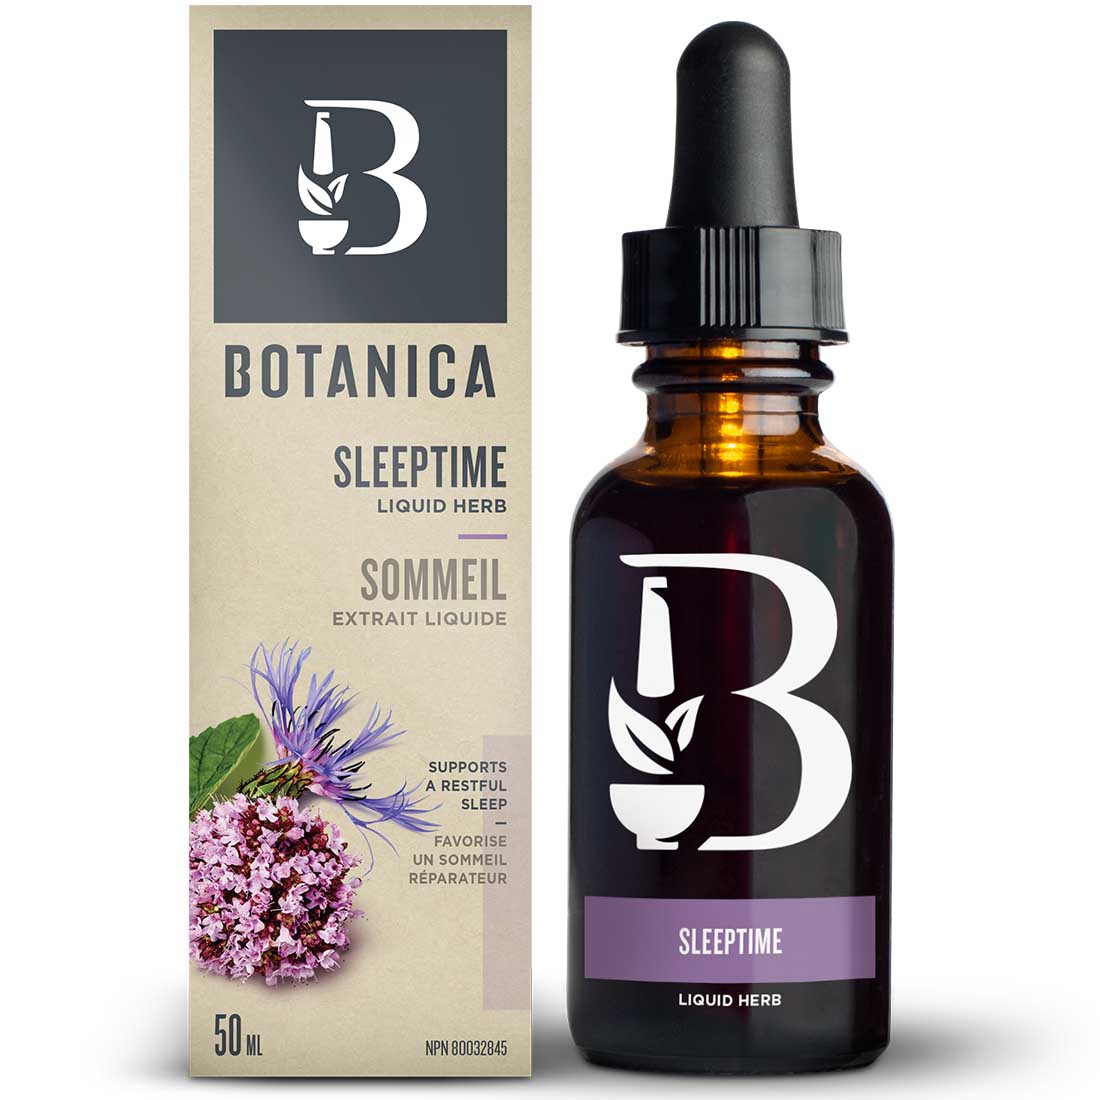 Botanica Valerian Sleeptime Liquid Herb, 50ml